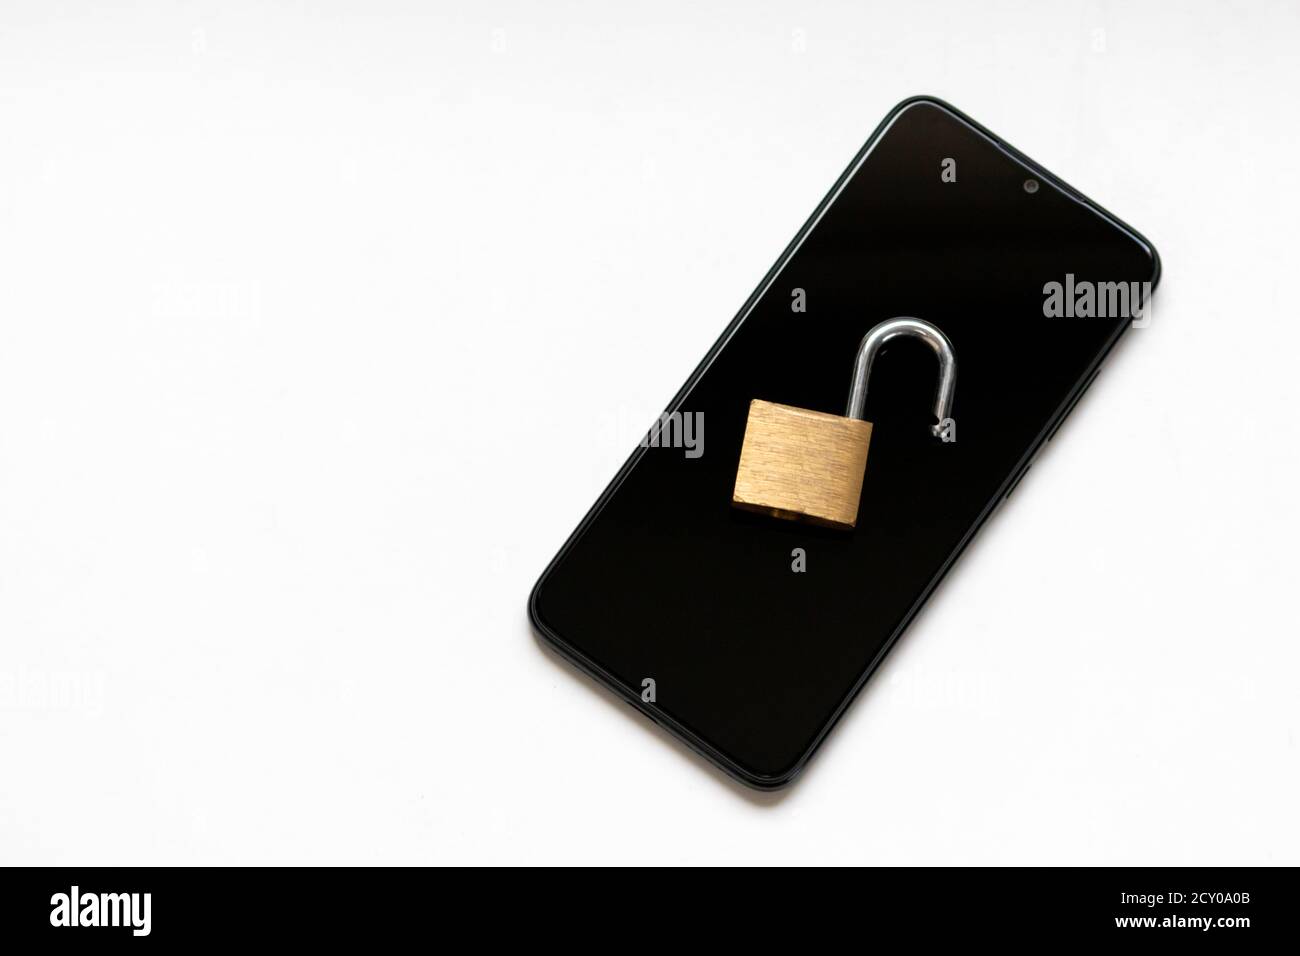 Le chiffrement vulnérable et la cyber-sécurité présentent un verrou de clé ouvert sur un smartphone noir pour les attaques de pirates ou les cyberattaques la protection en tant qu'entreprise de sécurité Banque D'Images